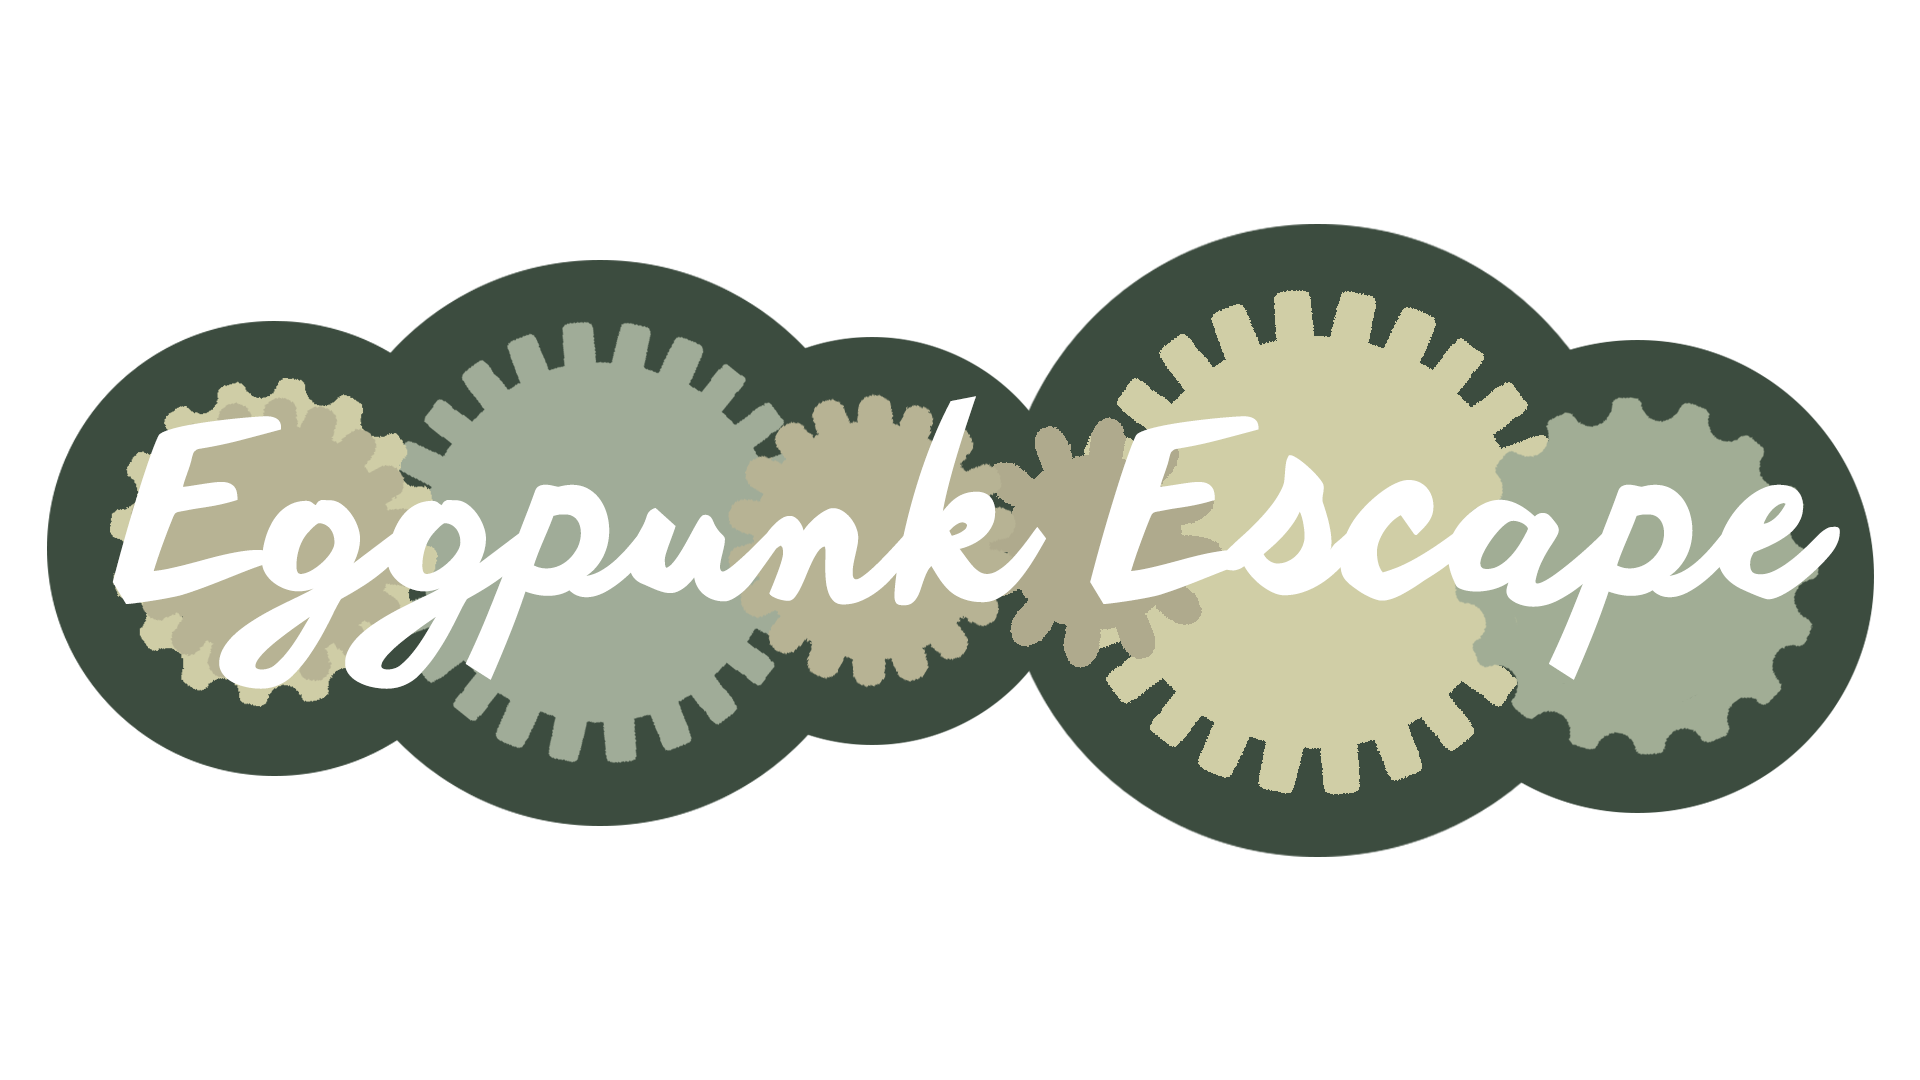 Eggpunk Escape